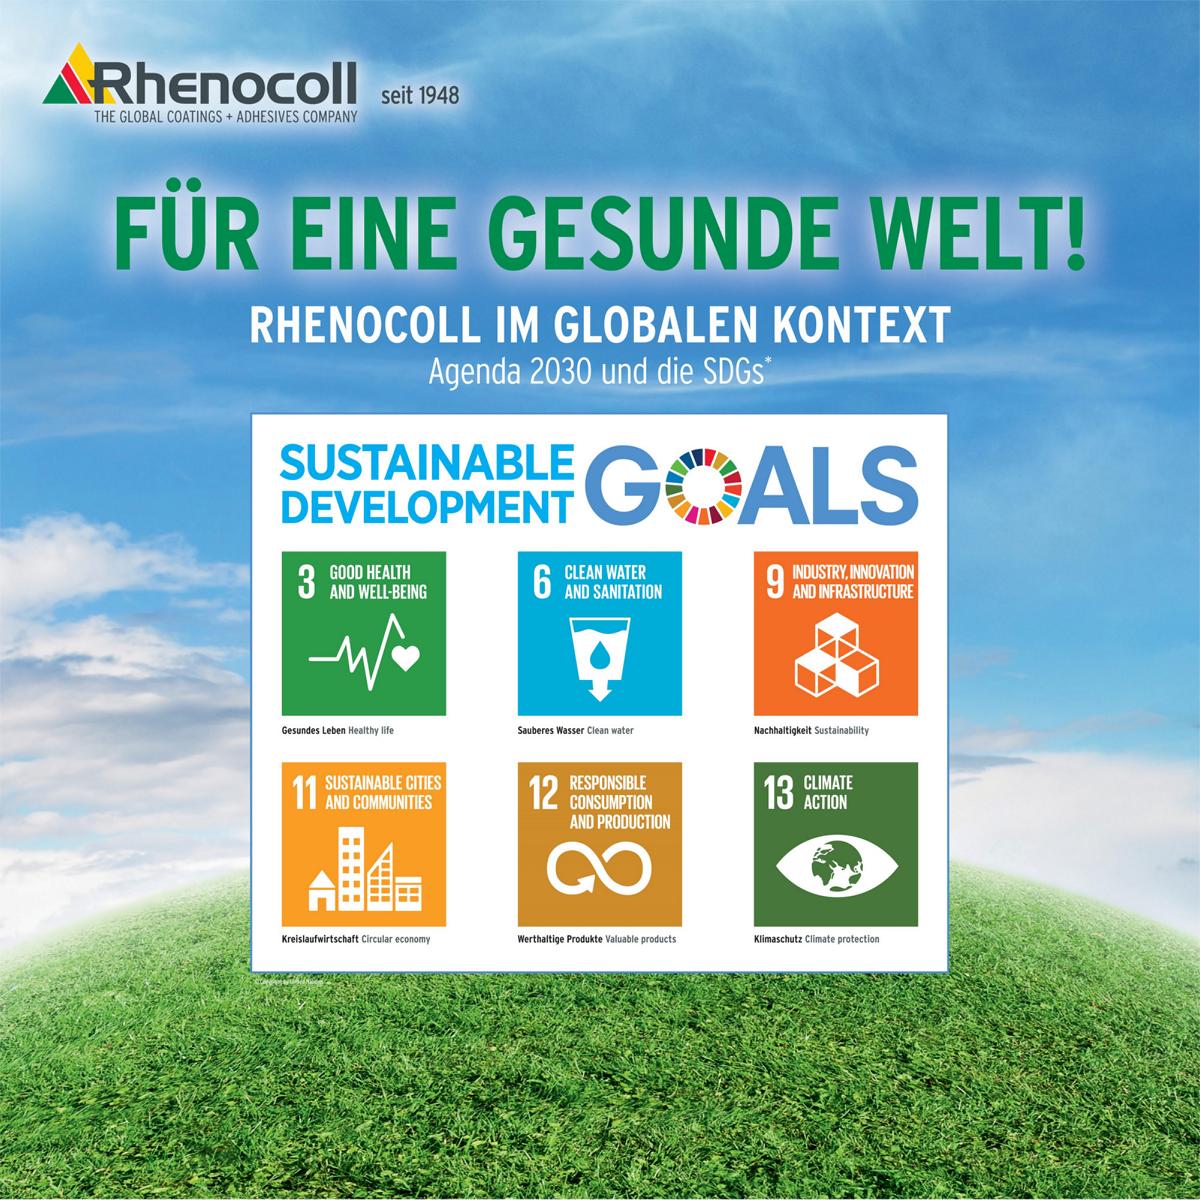 development goals gesundes leben sauberes wasser nachhaltigkeit kreislaufwirtschaft wethaltige produkte klimaschutz